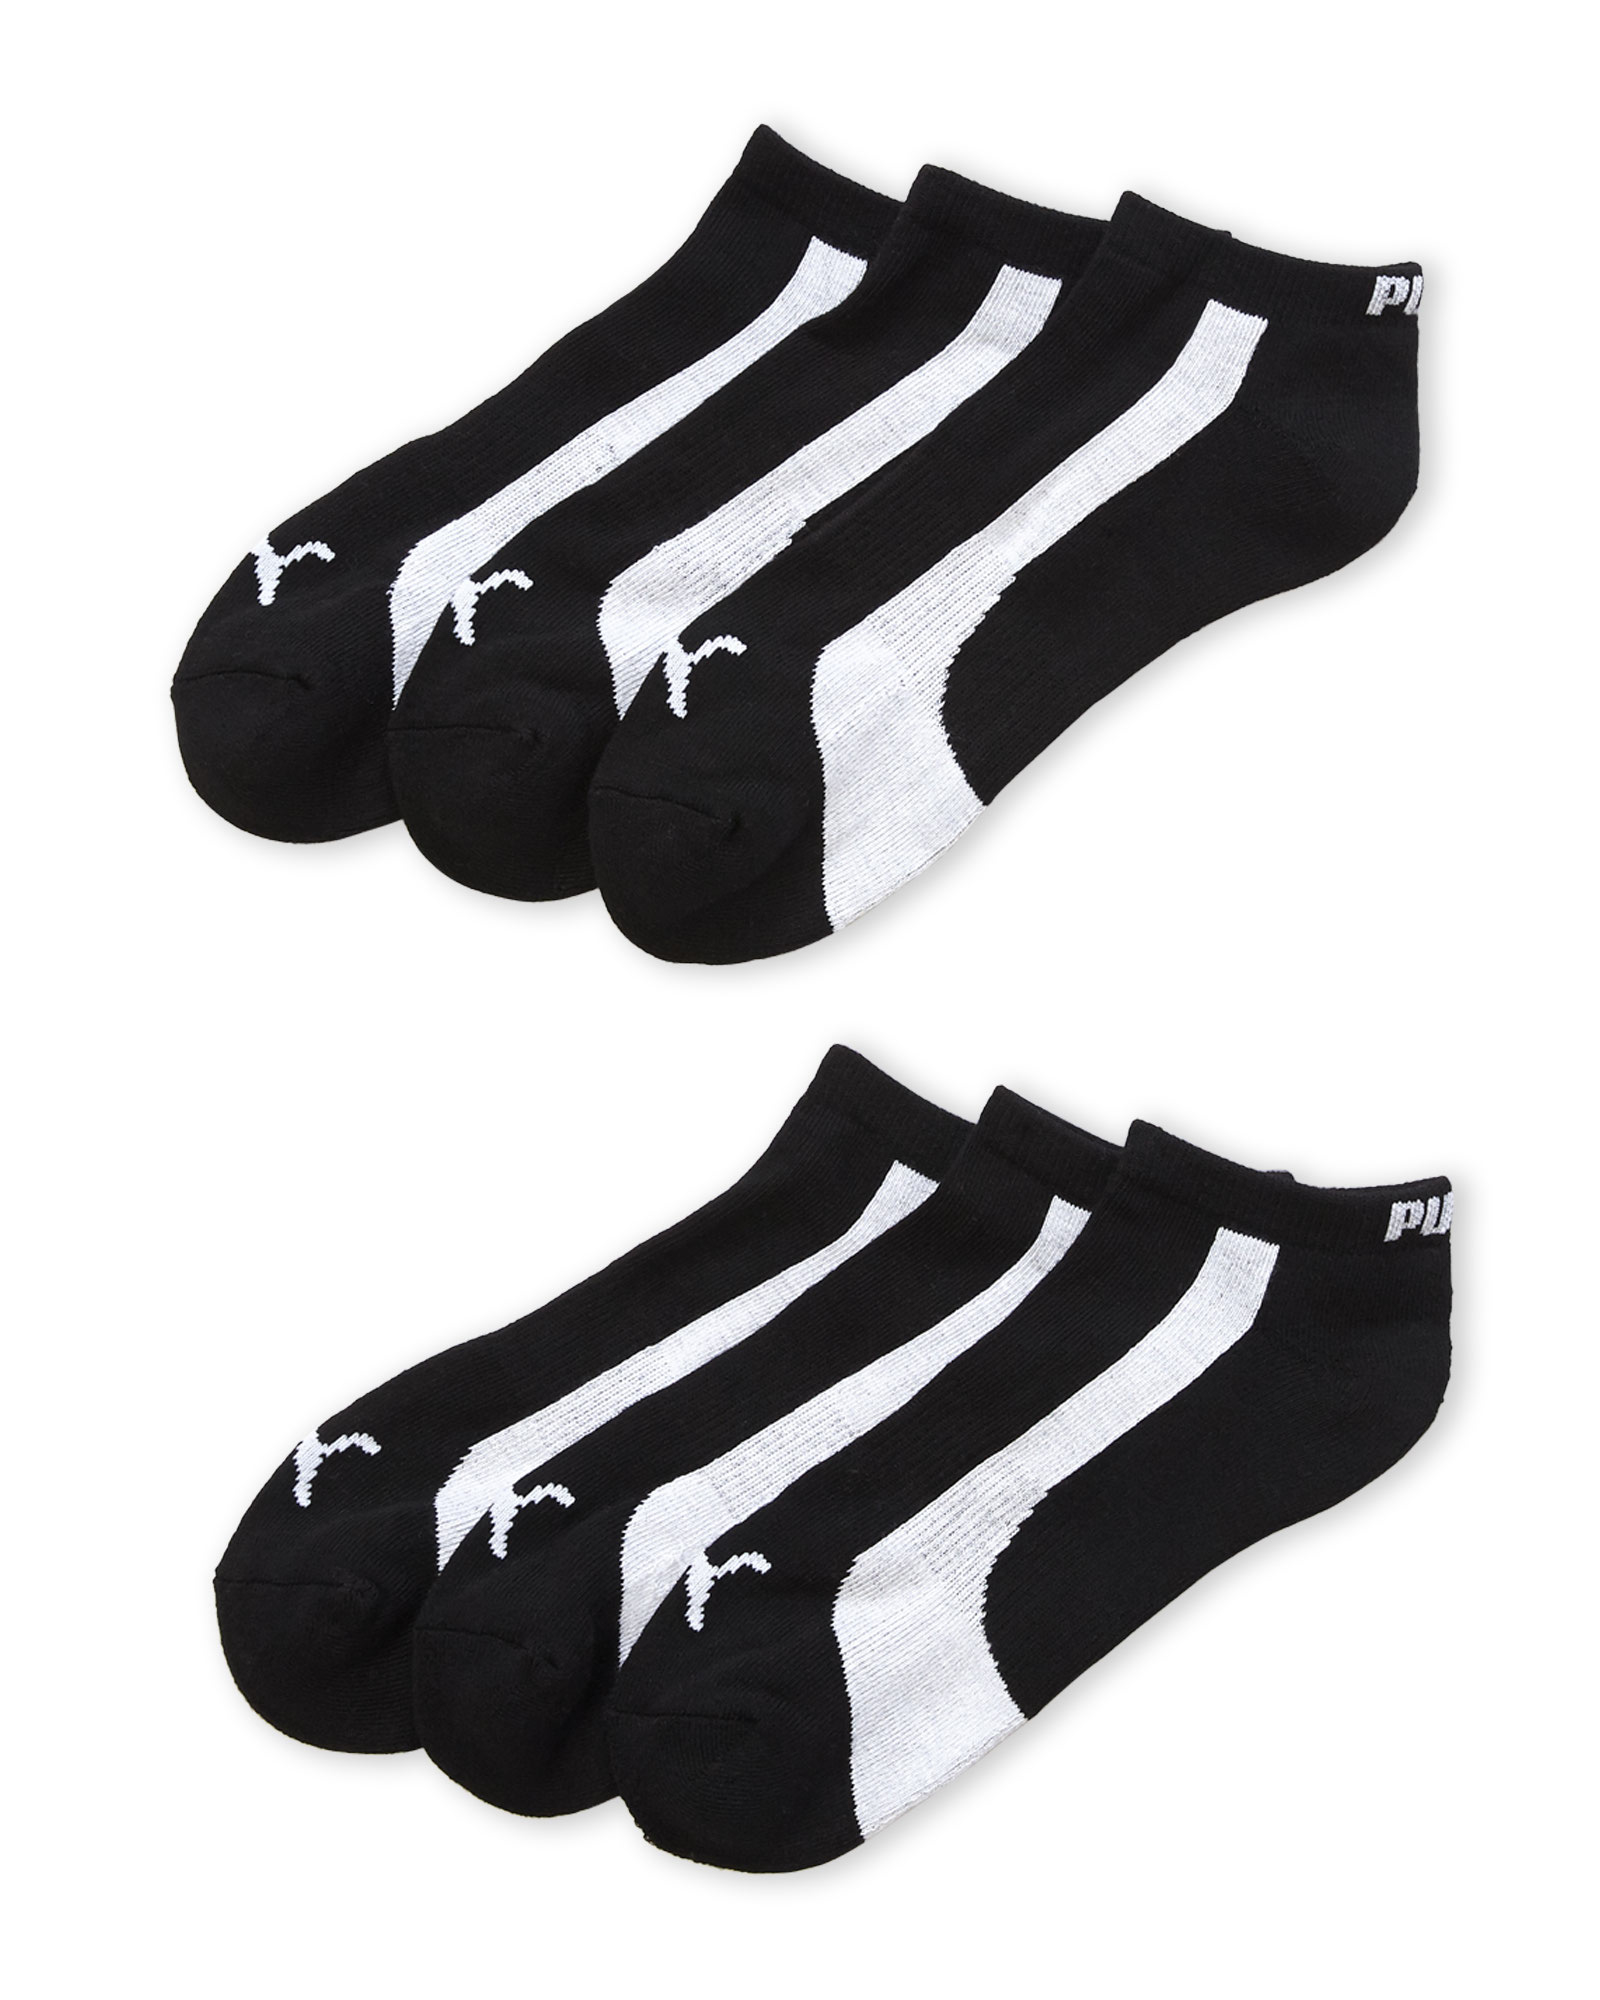 PUMA Mens 6 Pack Low Cut Socks Socks